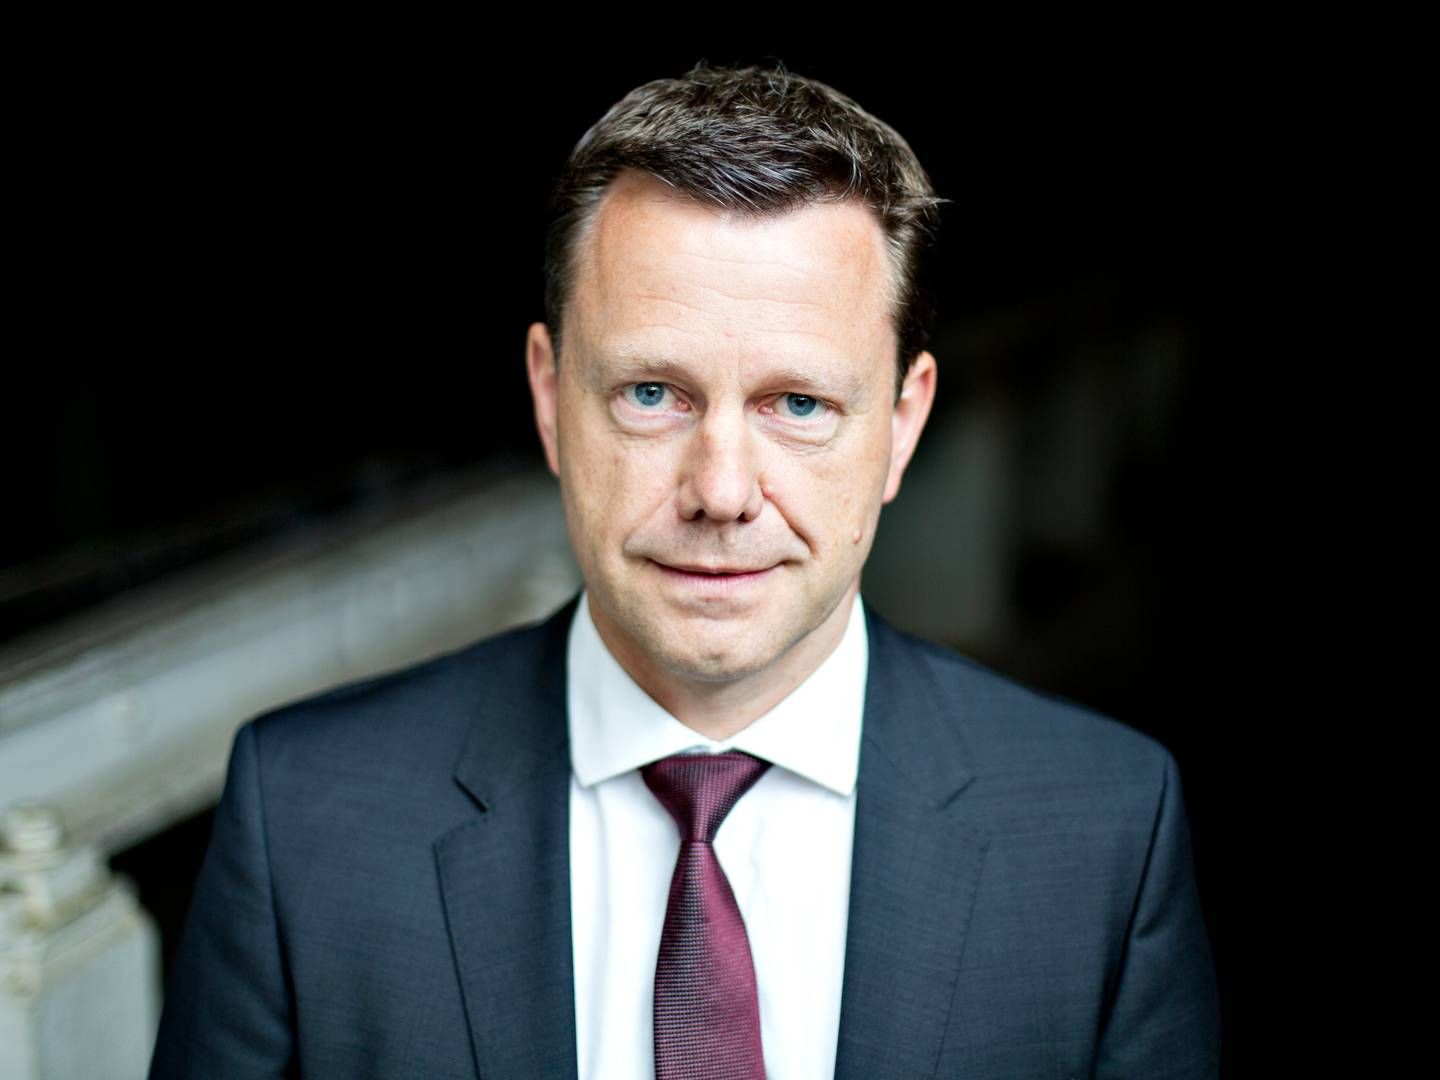 Kristian Hundebøll startede karrieren i DLG som direktionsassistent, men slutter nu efter 12 år som adm. direktør. | Foto: Stine Bidstrup